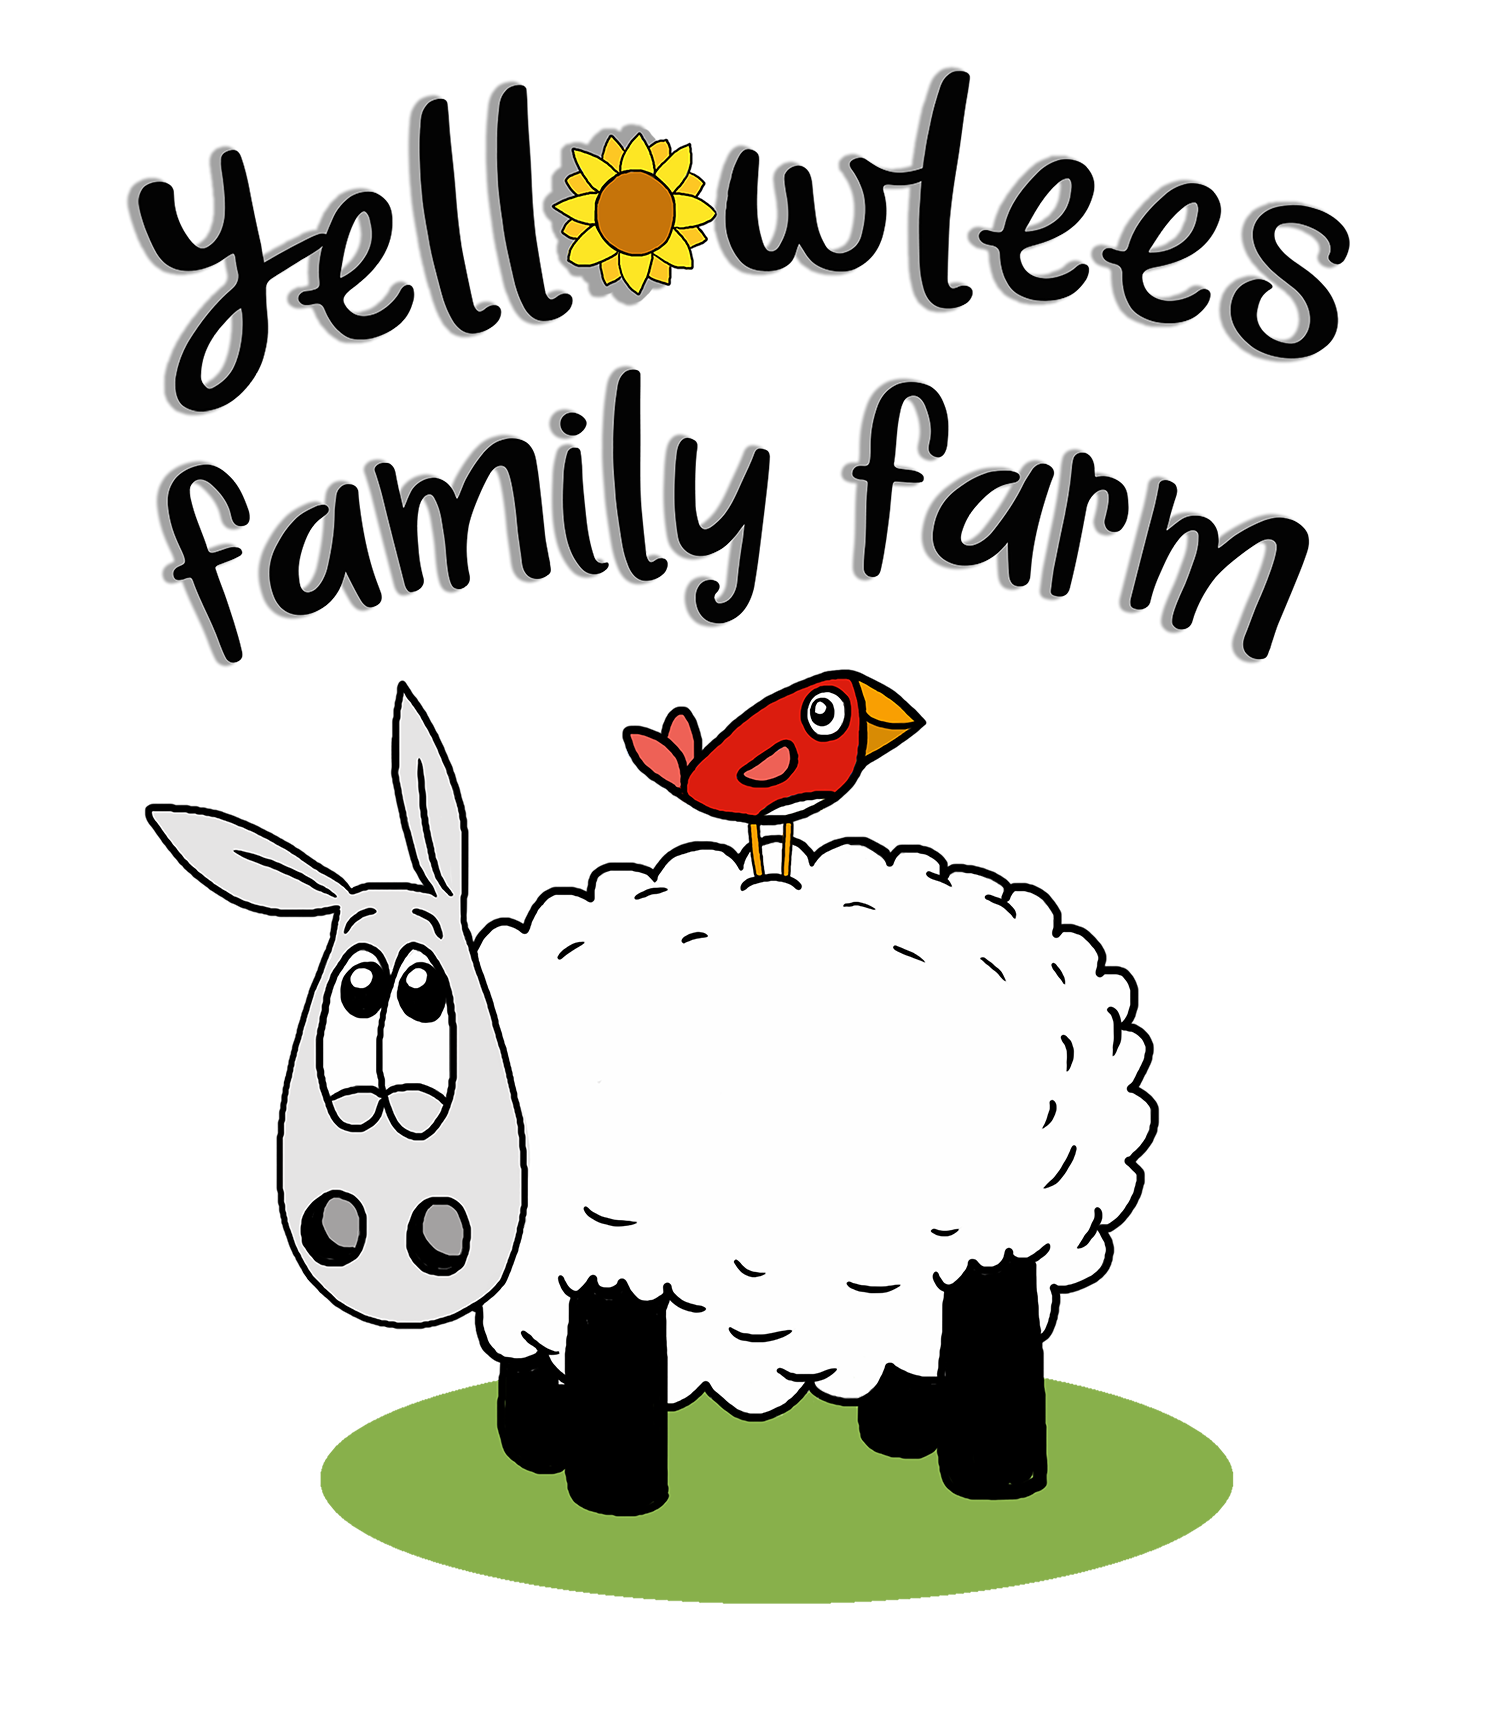 Yellowlees Family Farm logo